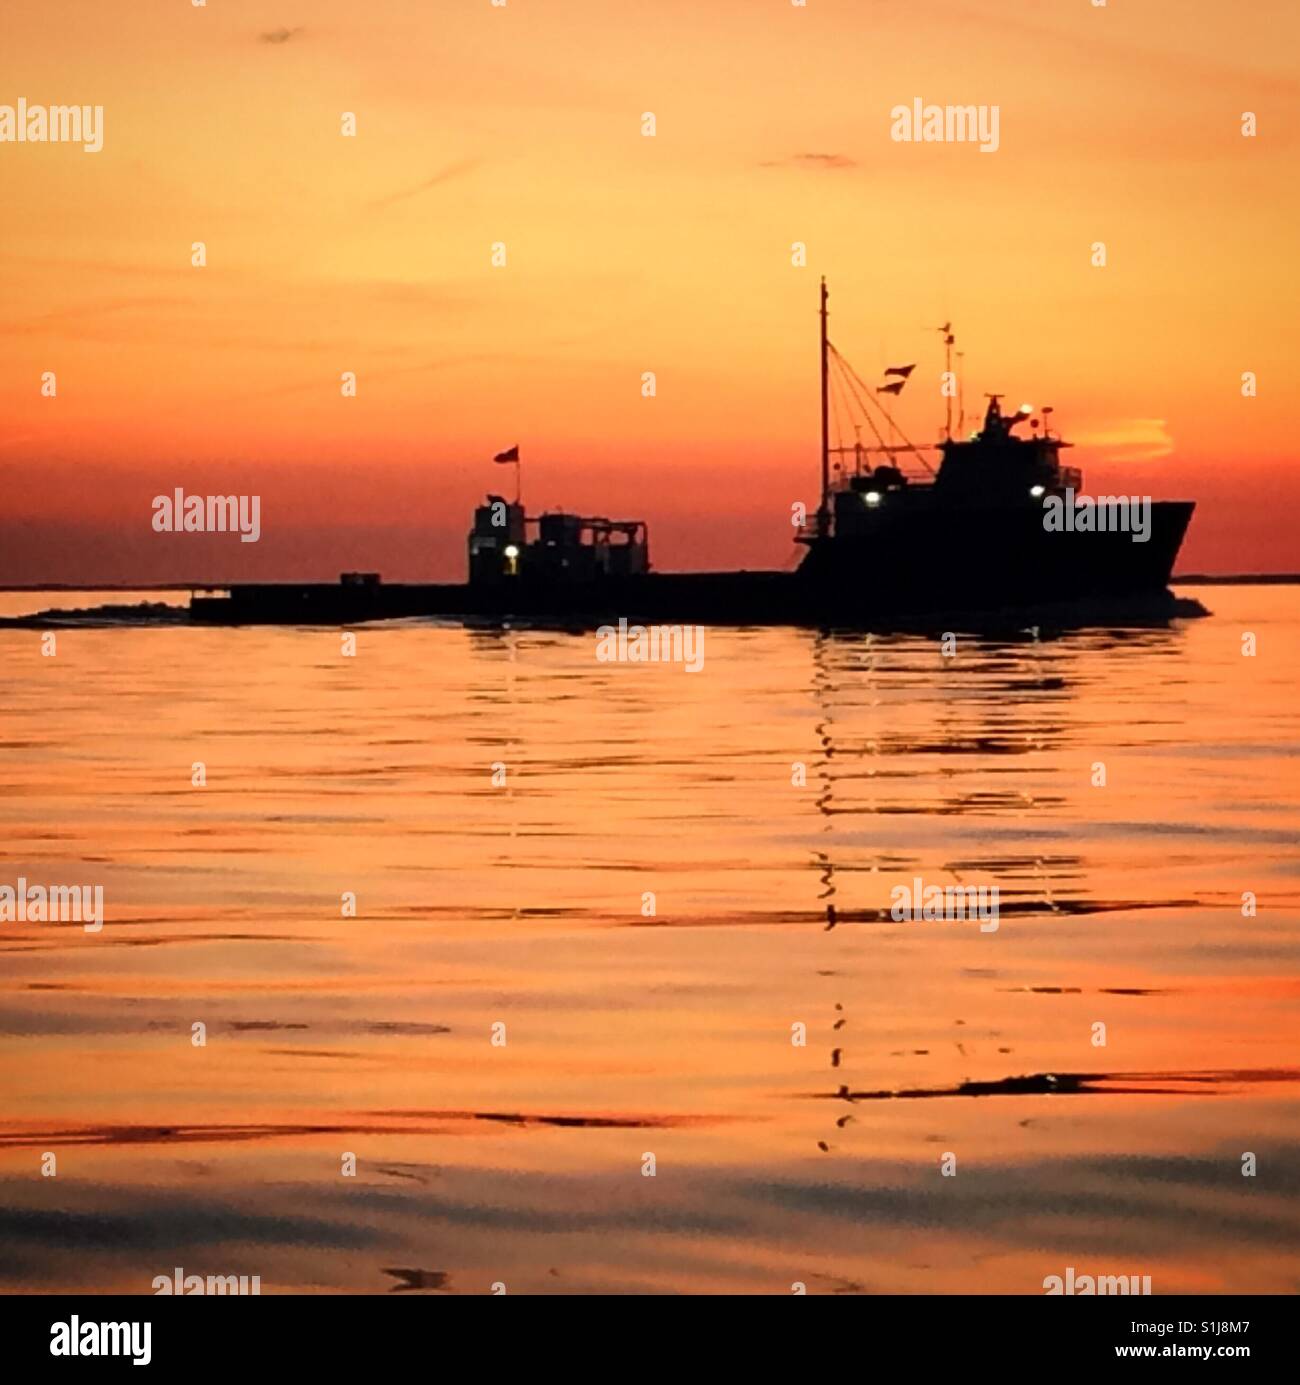 Fishing boat at sunrise on the Chesapeake Bay. Stock Photo